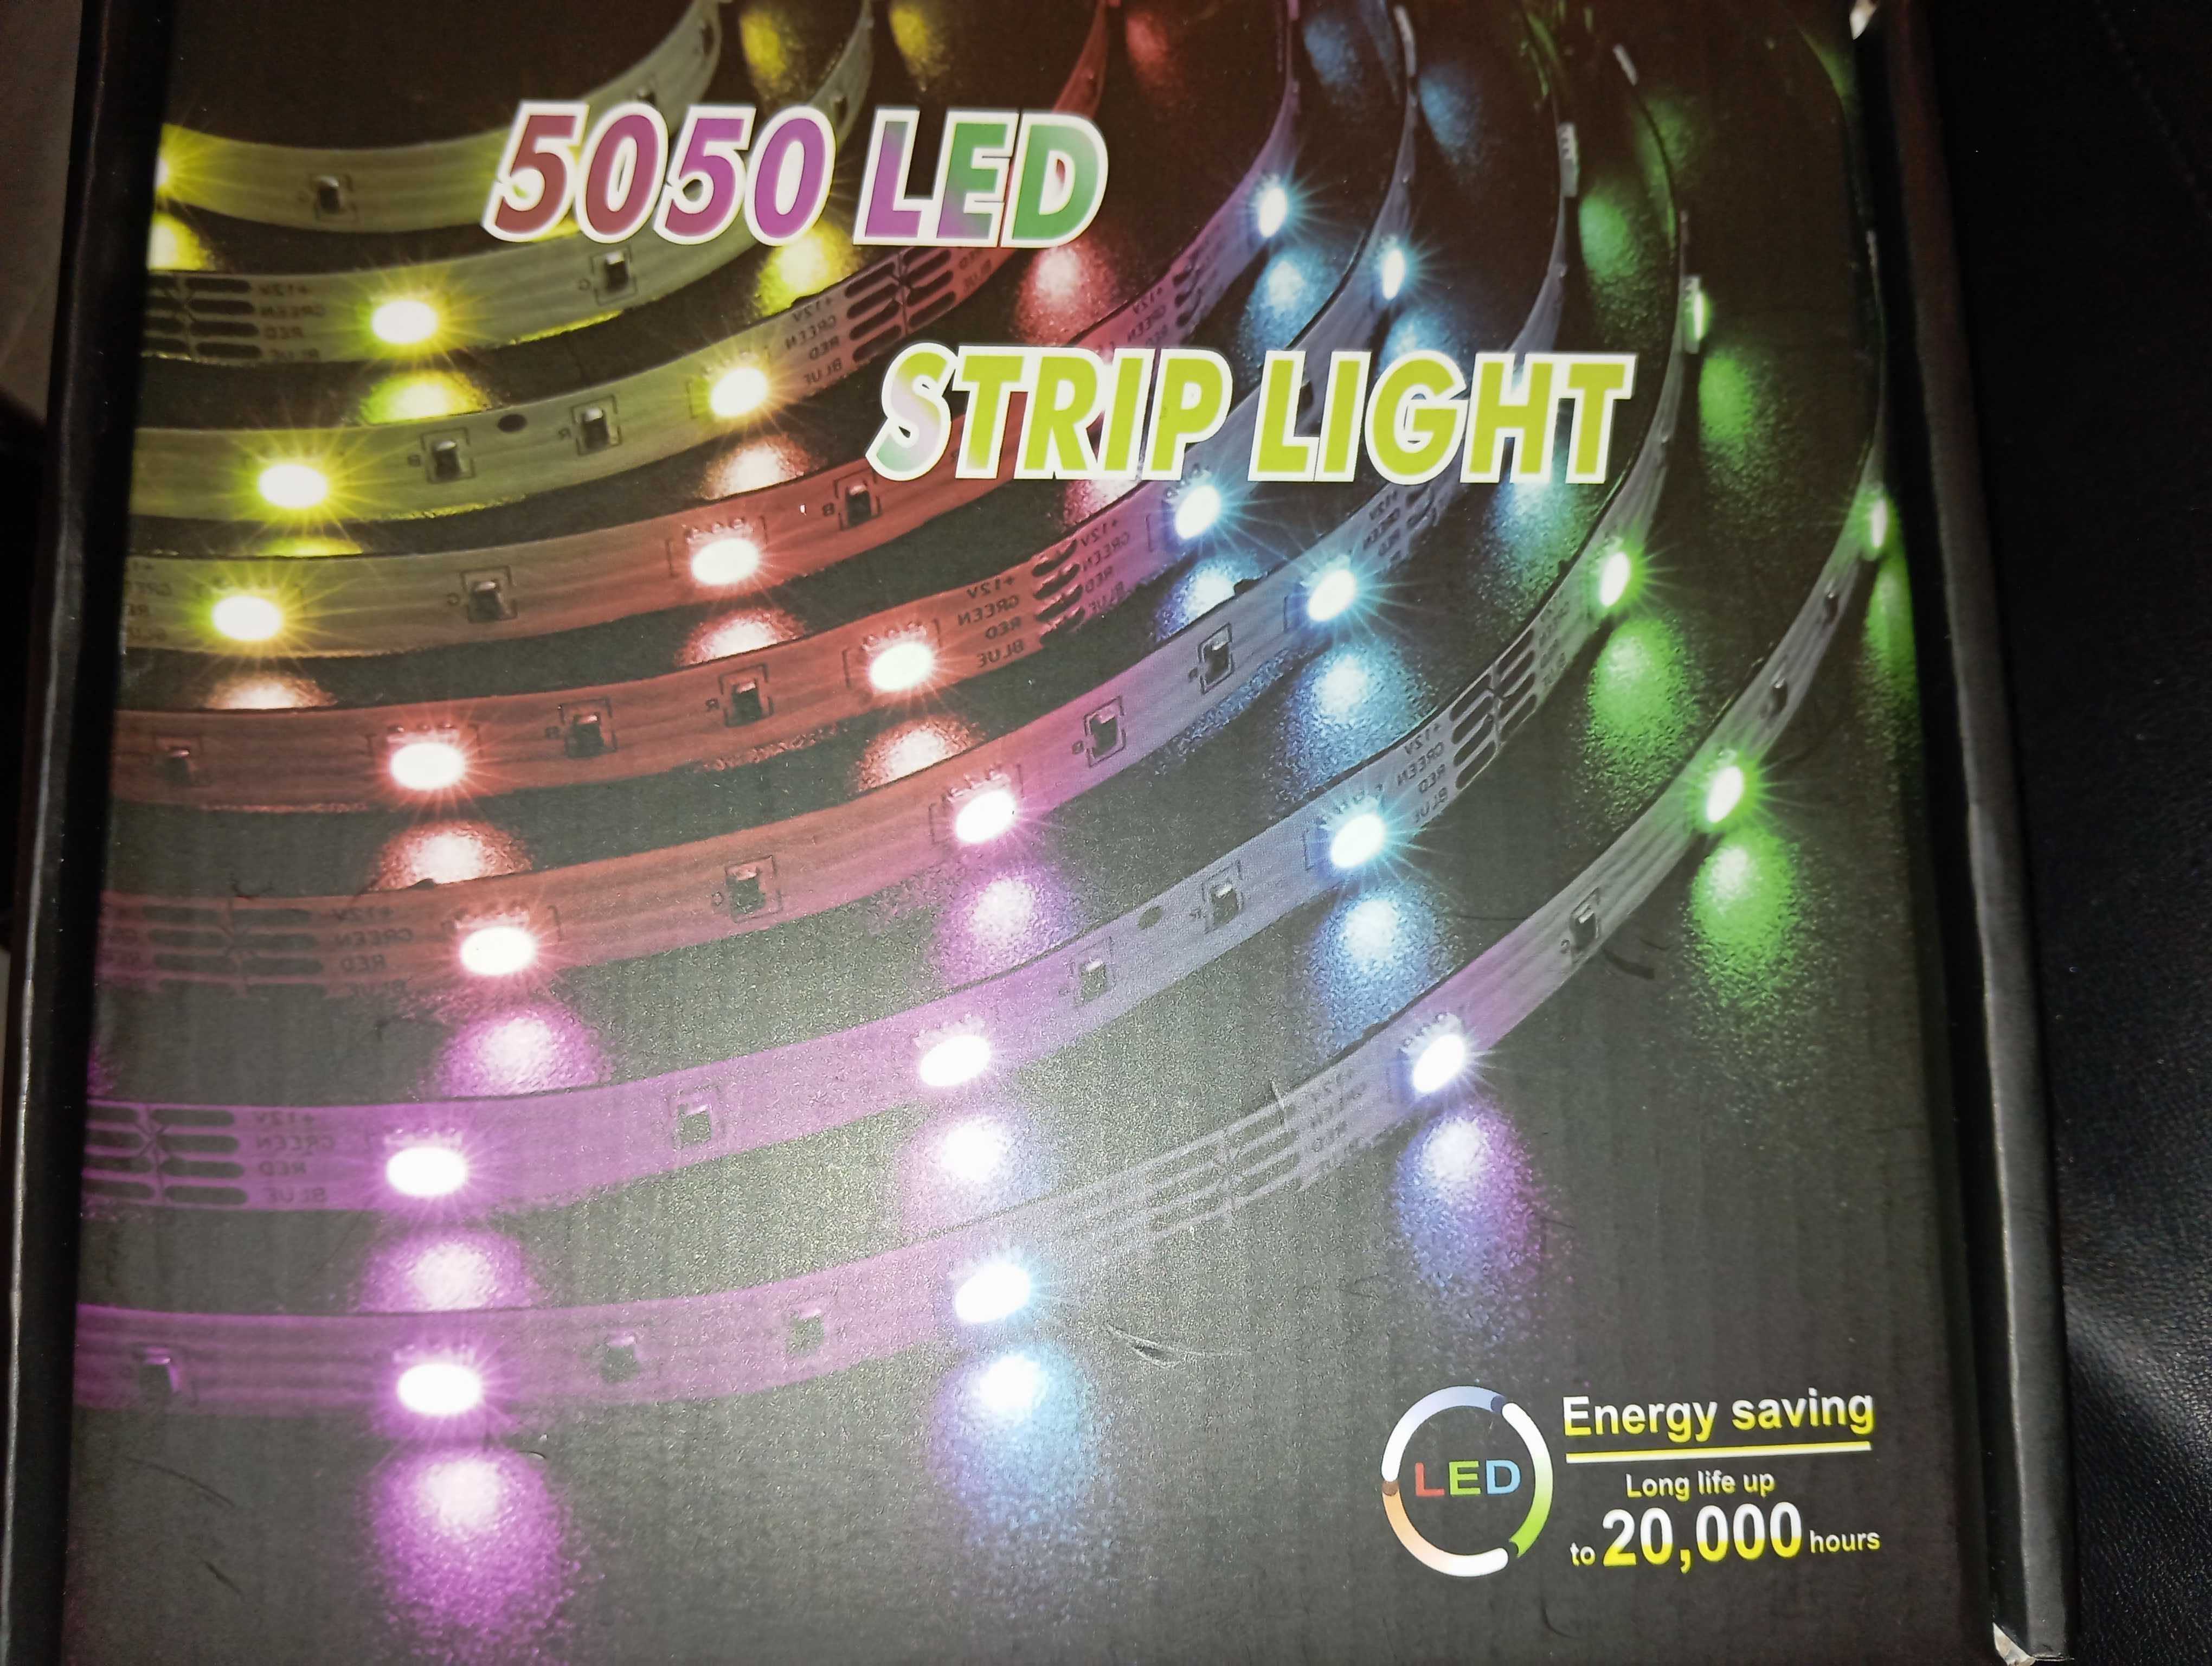 Taśma LED 8 metrów  5050 LED  Strip light